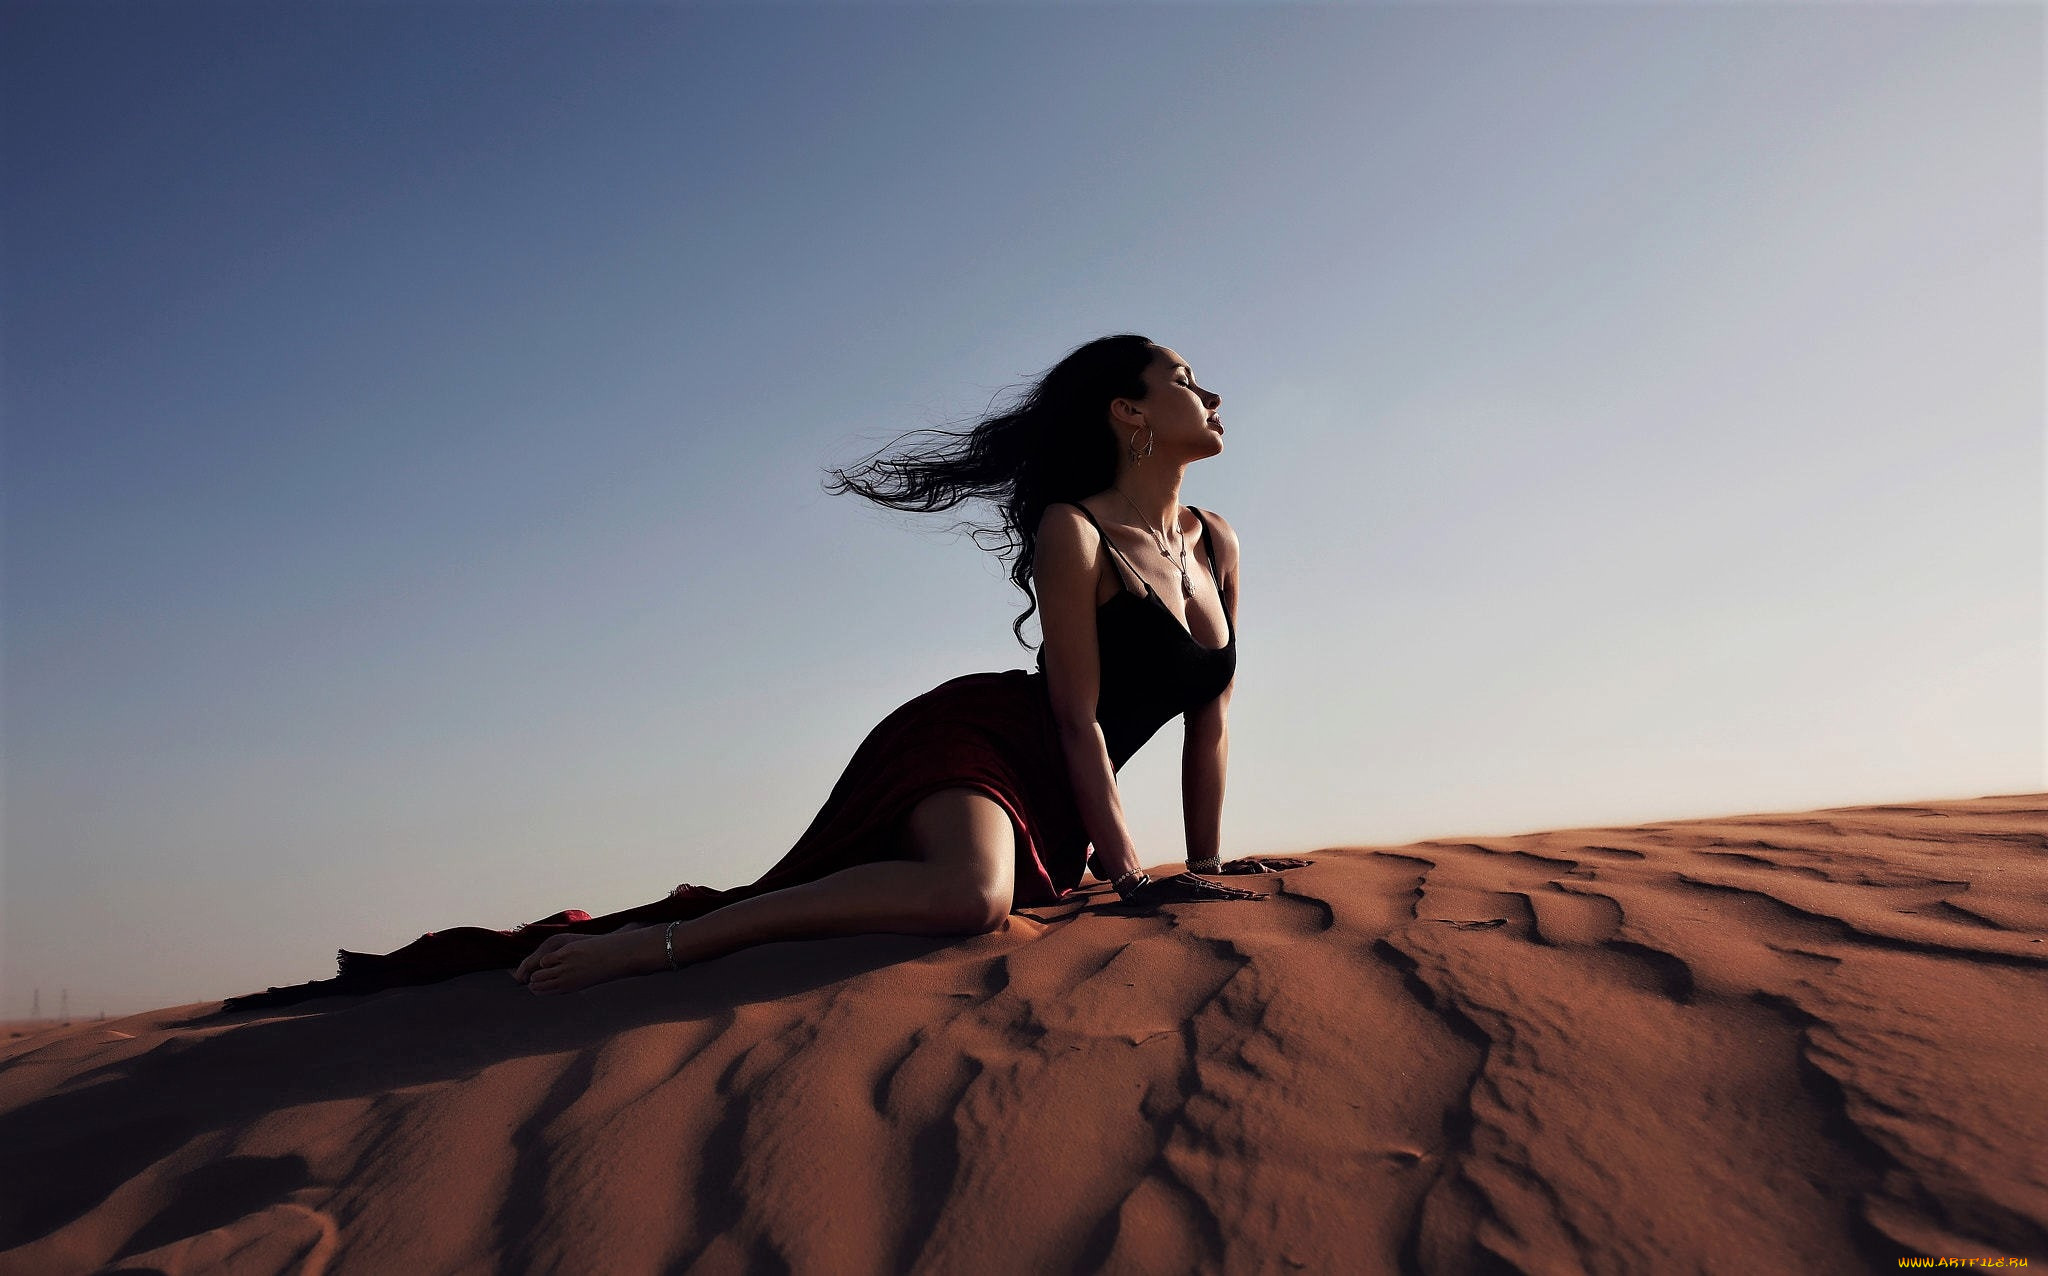 Фото в барханах песка девушки